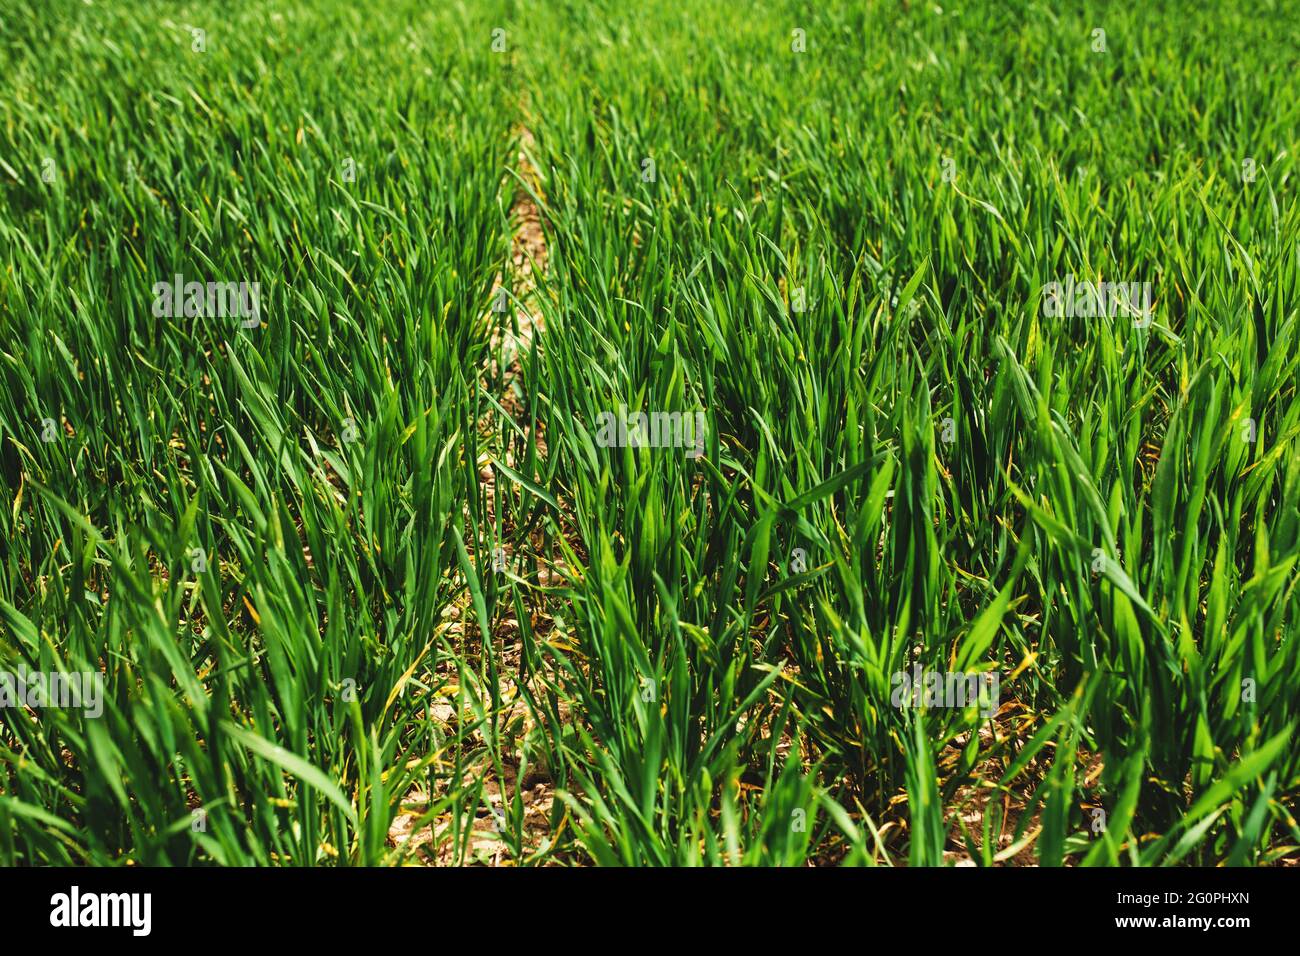 Des champs de ferme verts sans fin avec une culture de blé en gros plan au printemps. Photo de haute qualité Banque D'Images